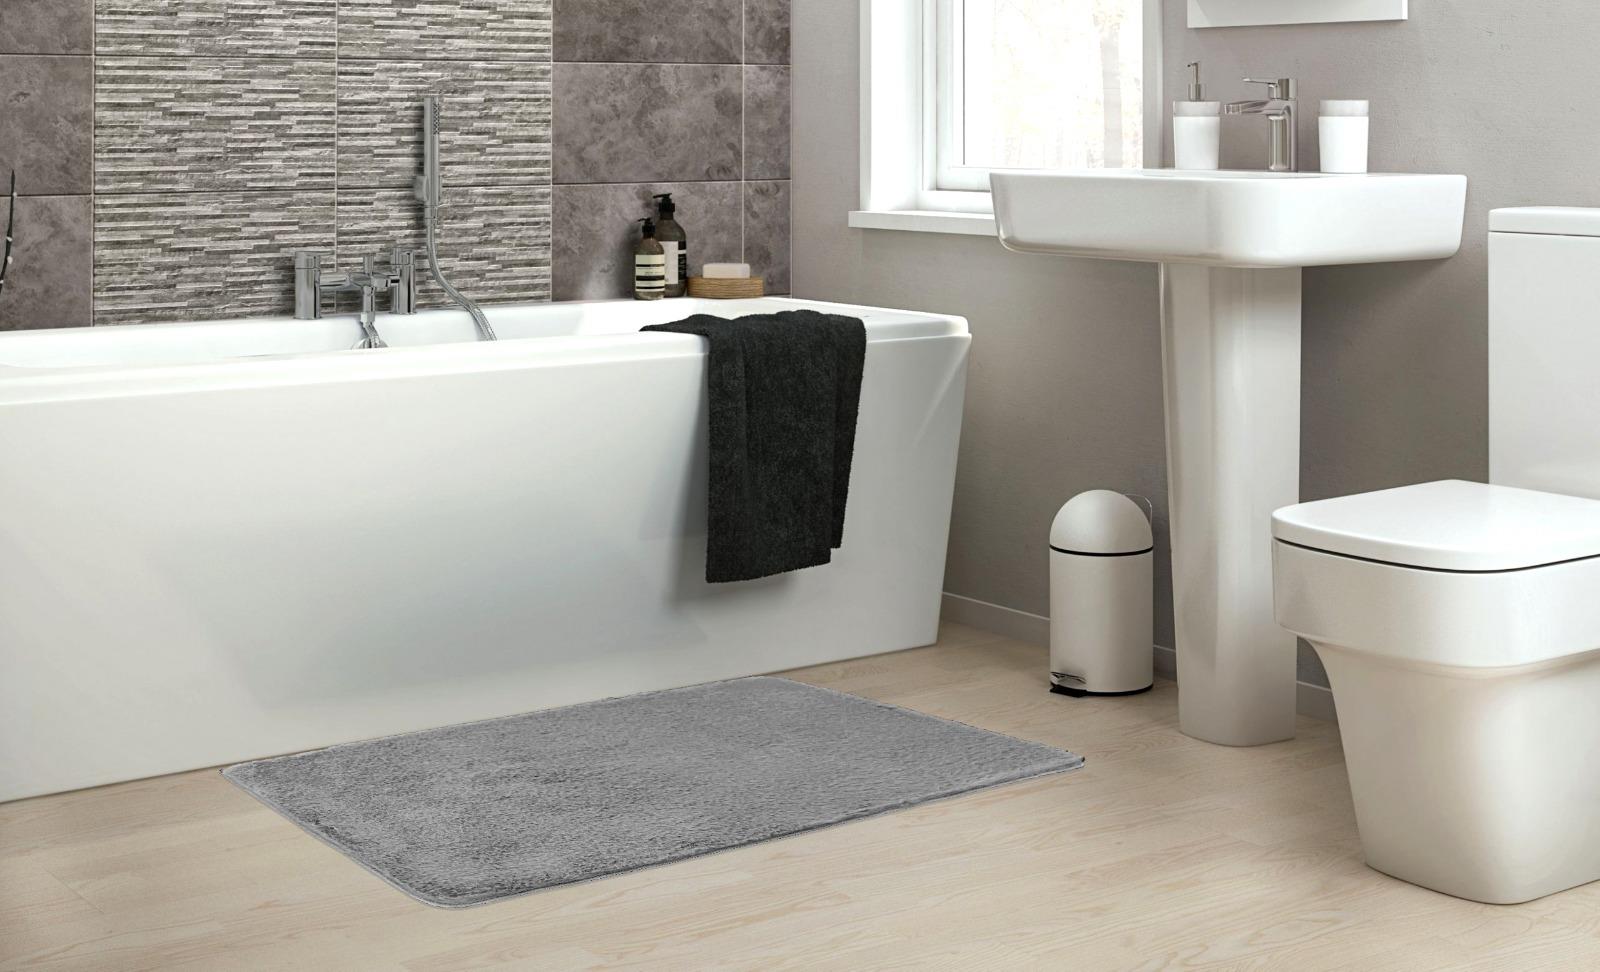 שטיח אמבטיה פרוותי דגם מיקה Soft סופט - אפור בהיר מיקה נעים במיוחד!